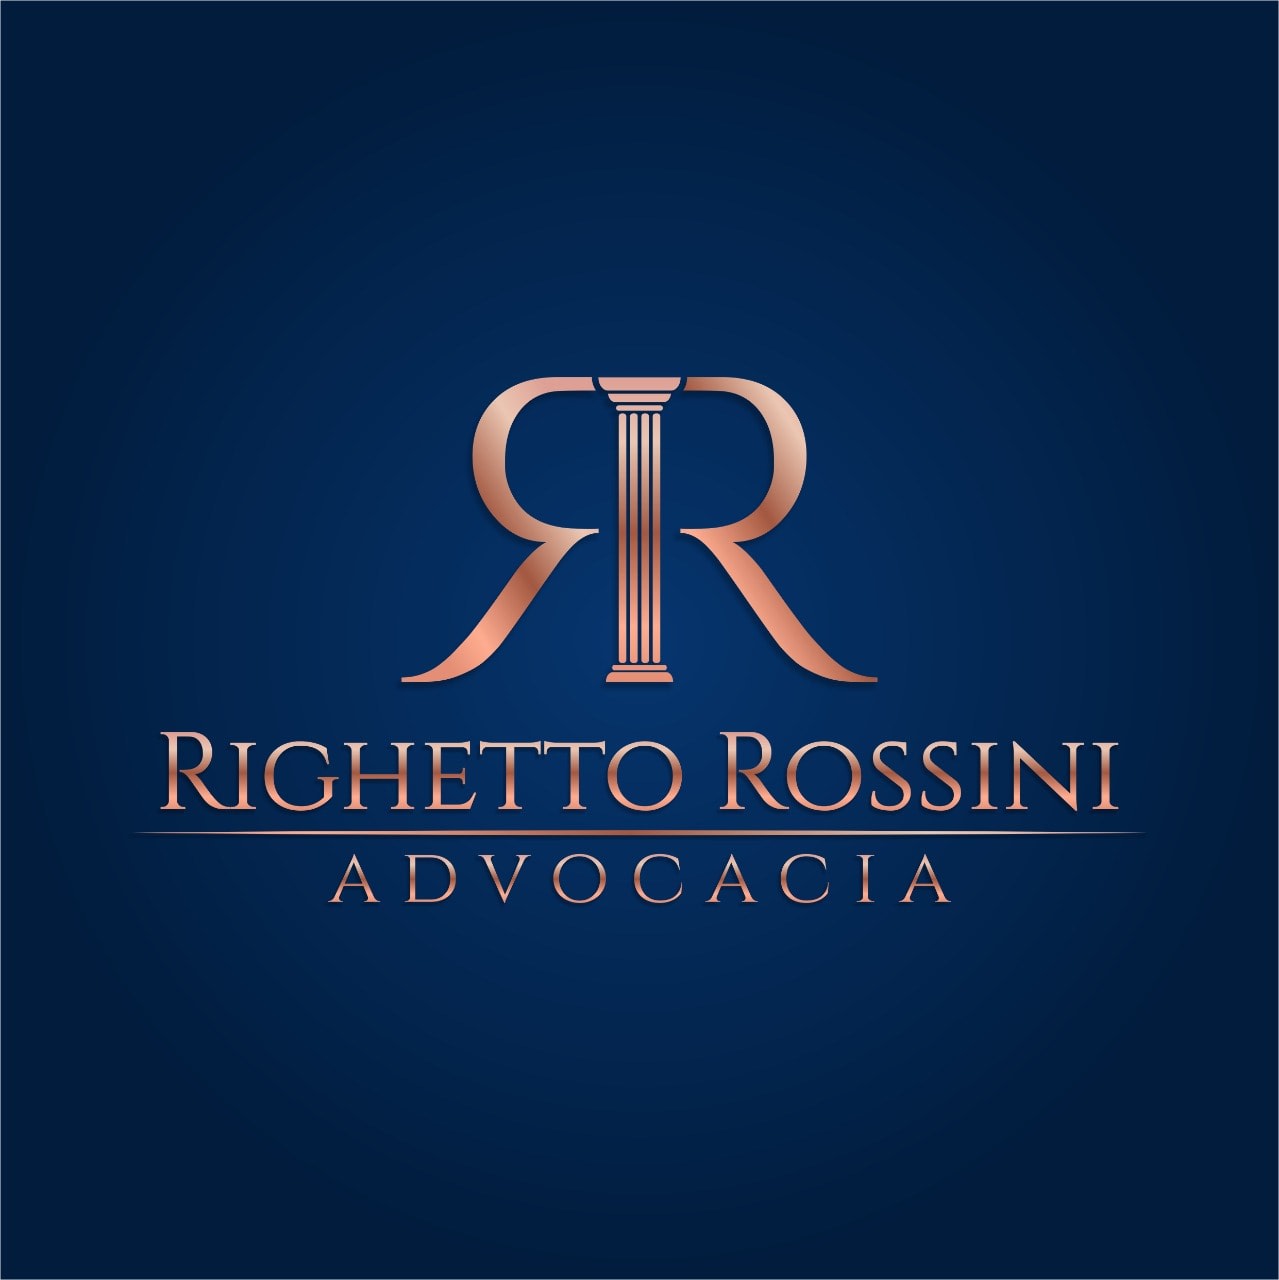 Righetto Rossini Advocacia